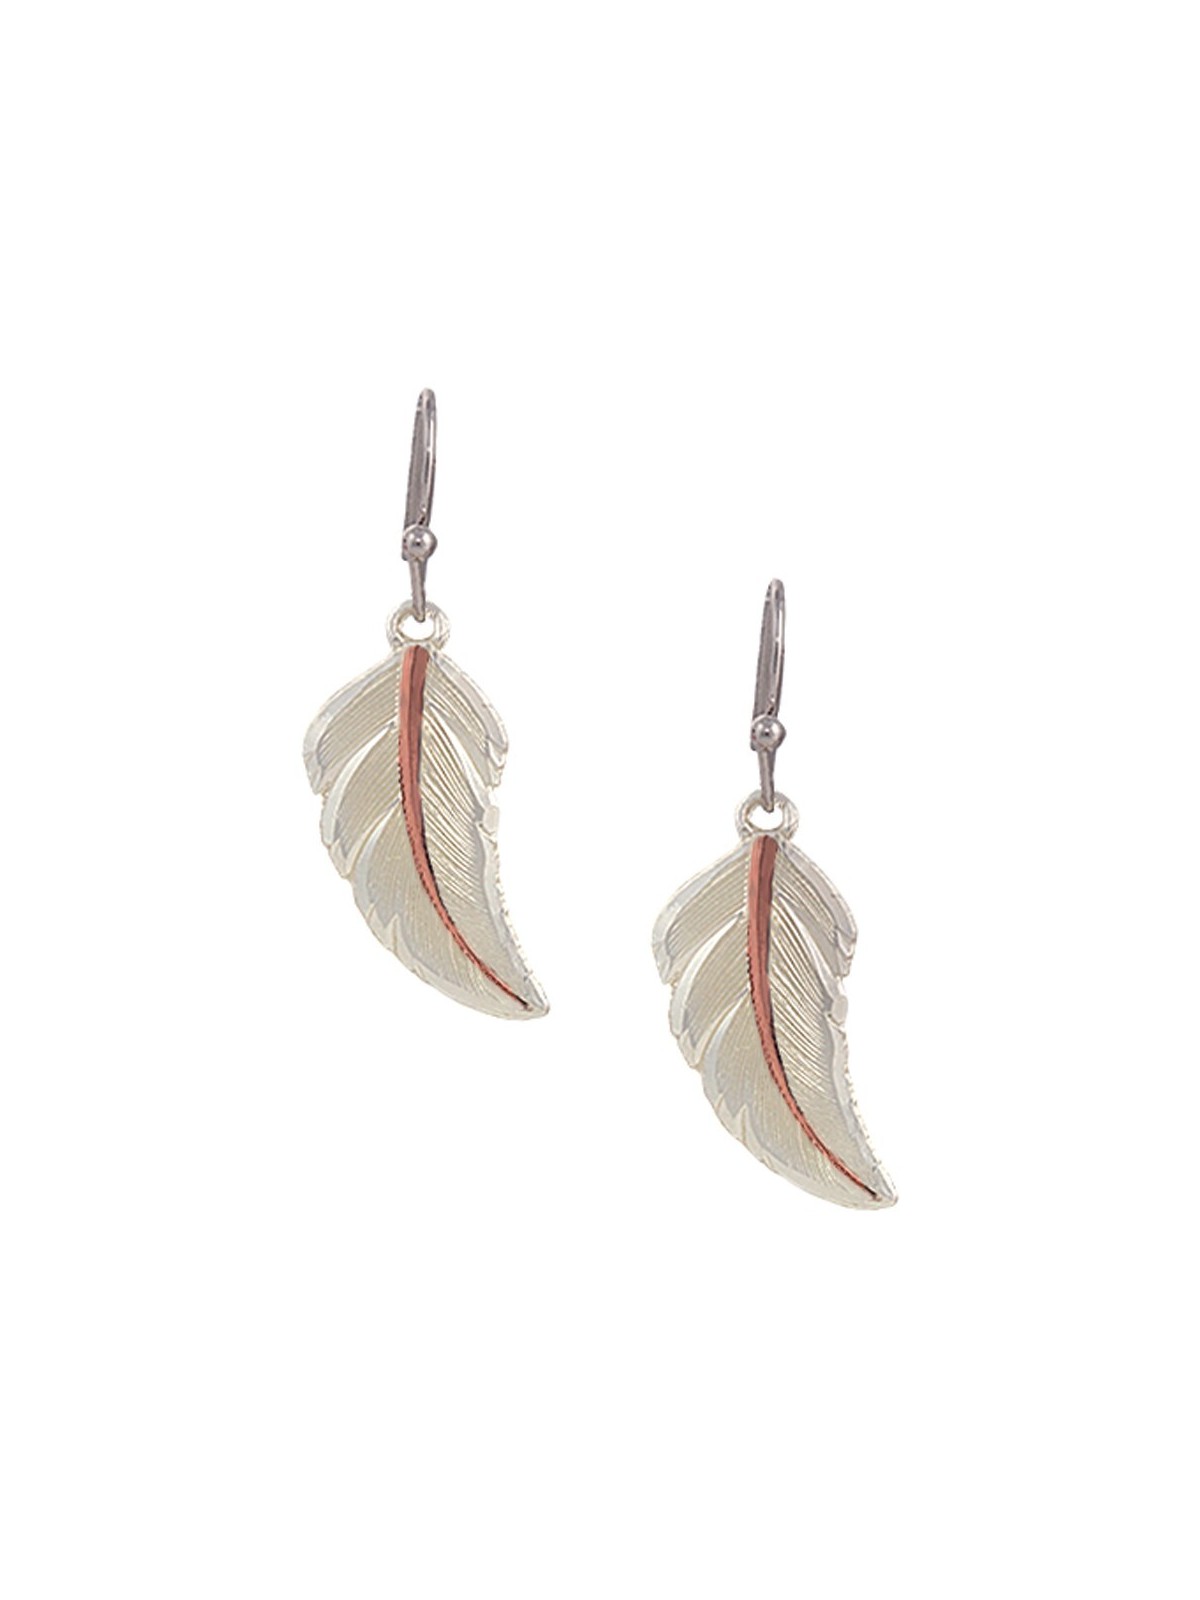 Feather Earrings/ Black Feather Earrings/ Boho Feather Earrings/ Real Feather  Earrings/ Small Feather Earring/ Black Boho Earring/boho Gifts - Etsy